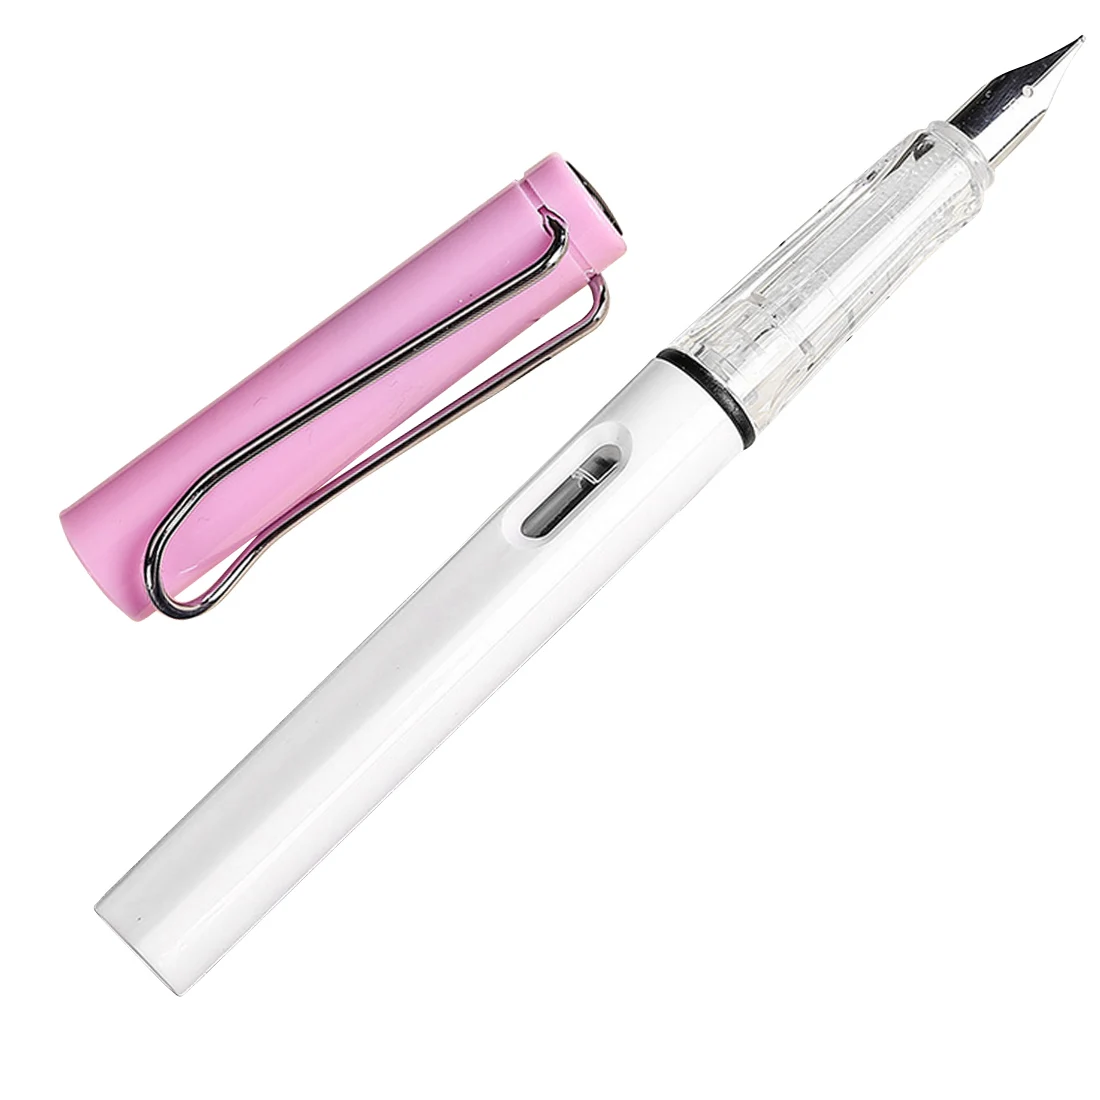 FangNymph 0,5 мм 0,38 мм цветная Новая мода авторучка Высокое качество Сменные чернила ручка бизнес студенческие канцелярские принадлежности - Цвет: white and purple